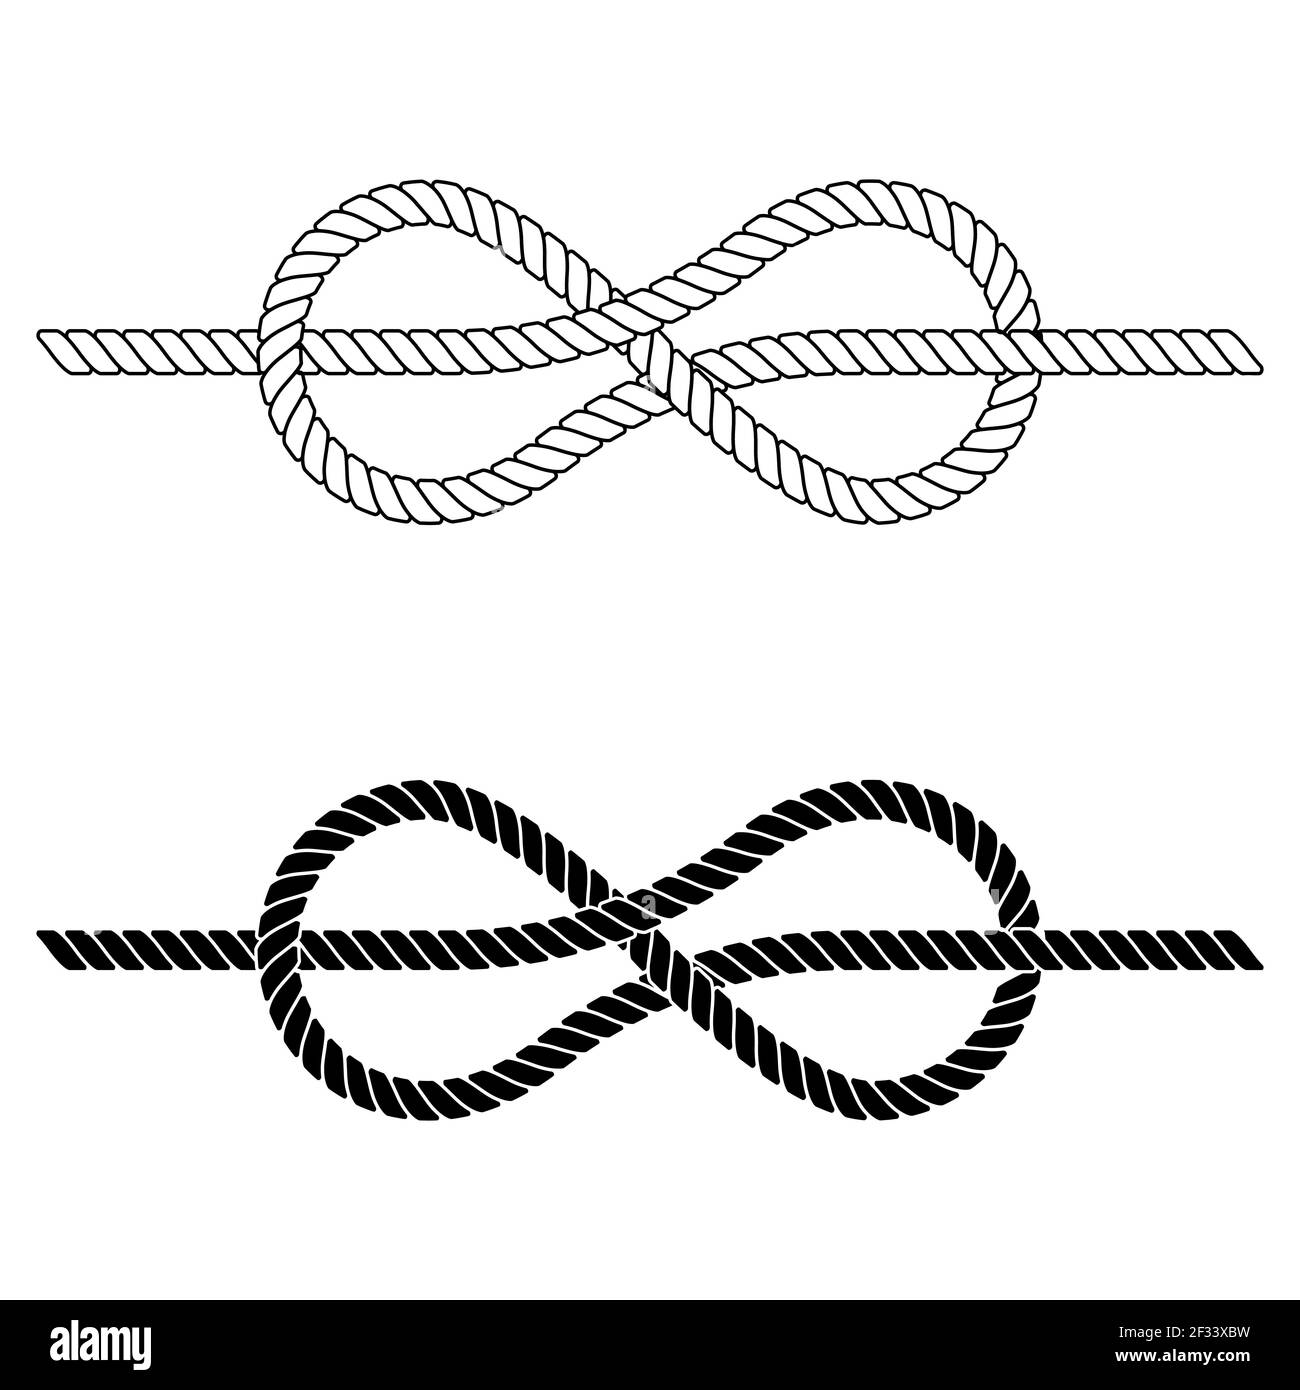 Geflochtenes Seil wird in einem Seeknoten gebunden, der Vektor-Seilknoten aus Spitze ist ein Symbol für Zusammenhalt, enge Bindungen Teamwork Stock Vektor